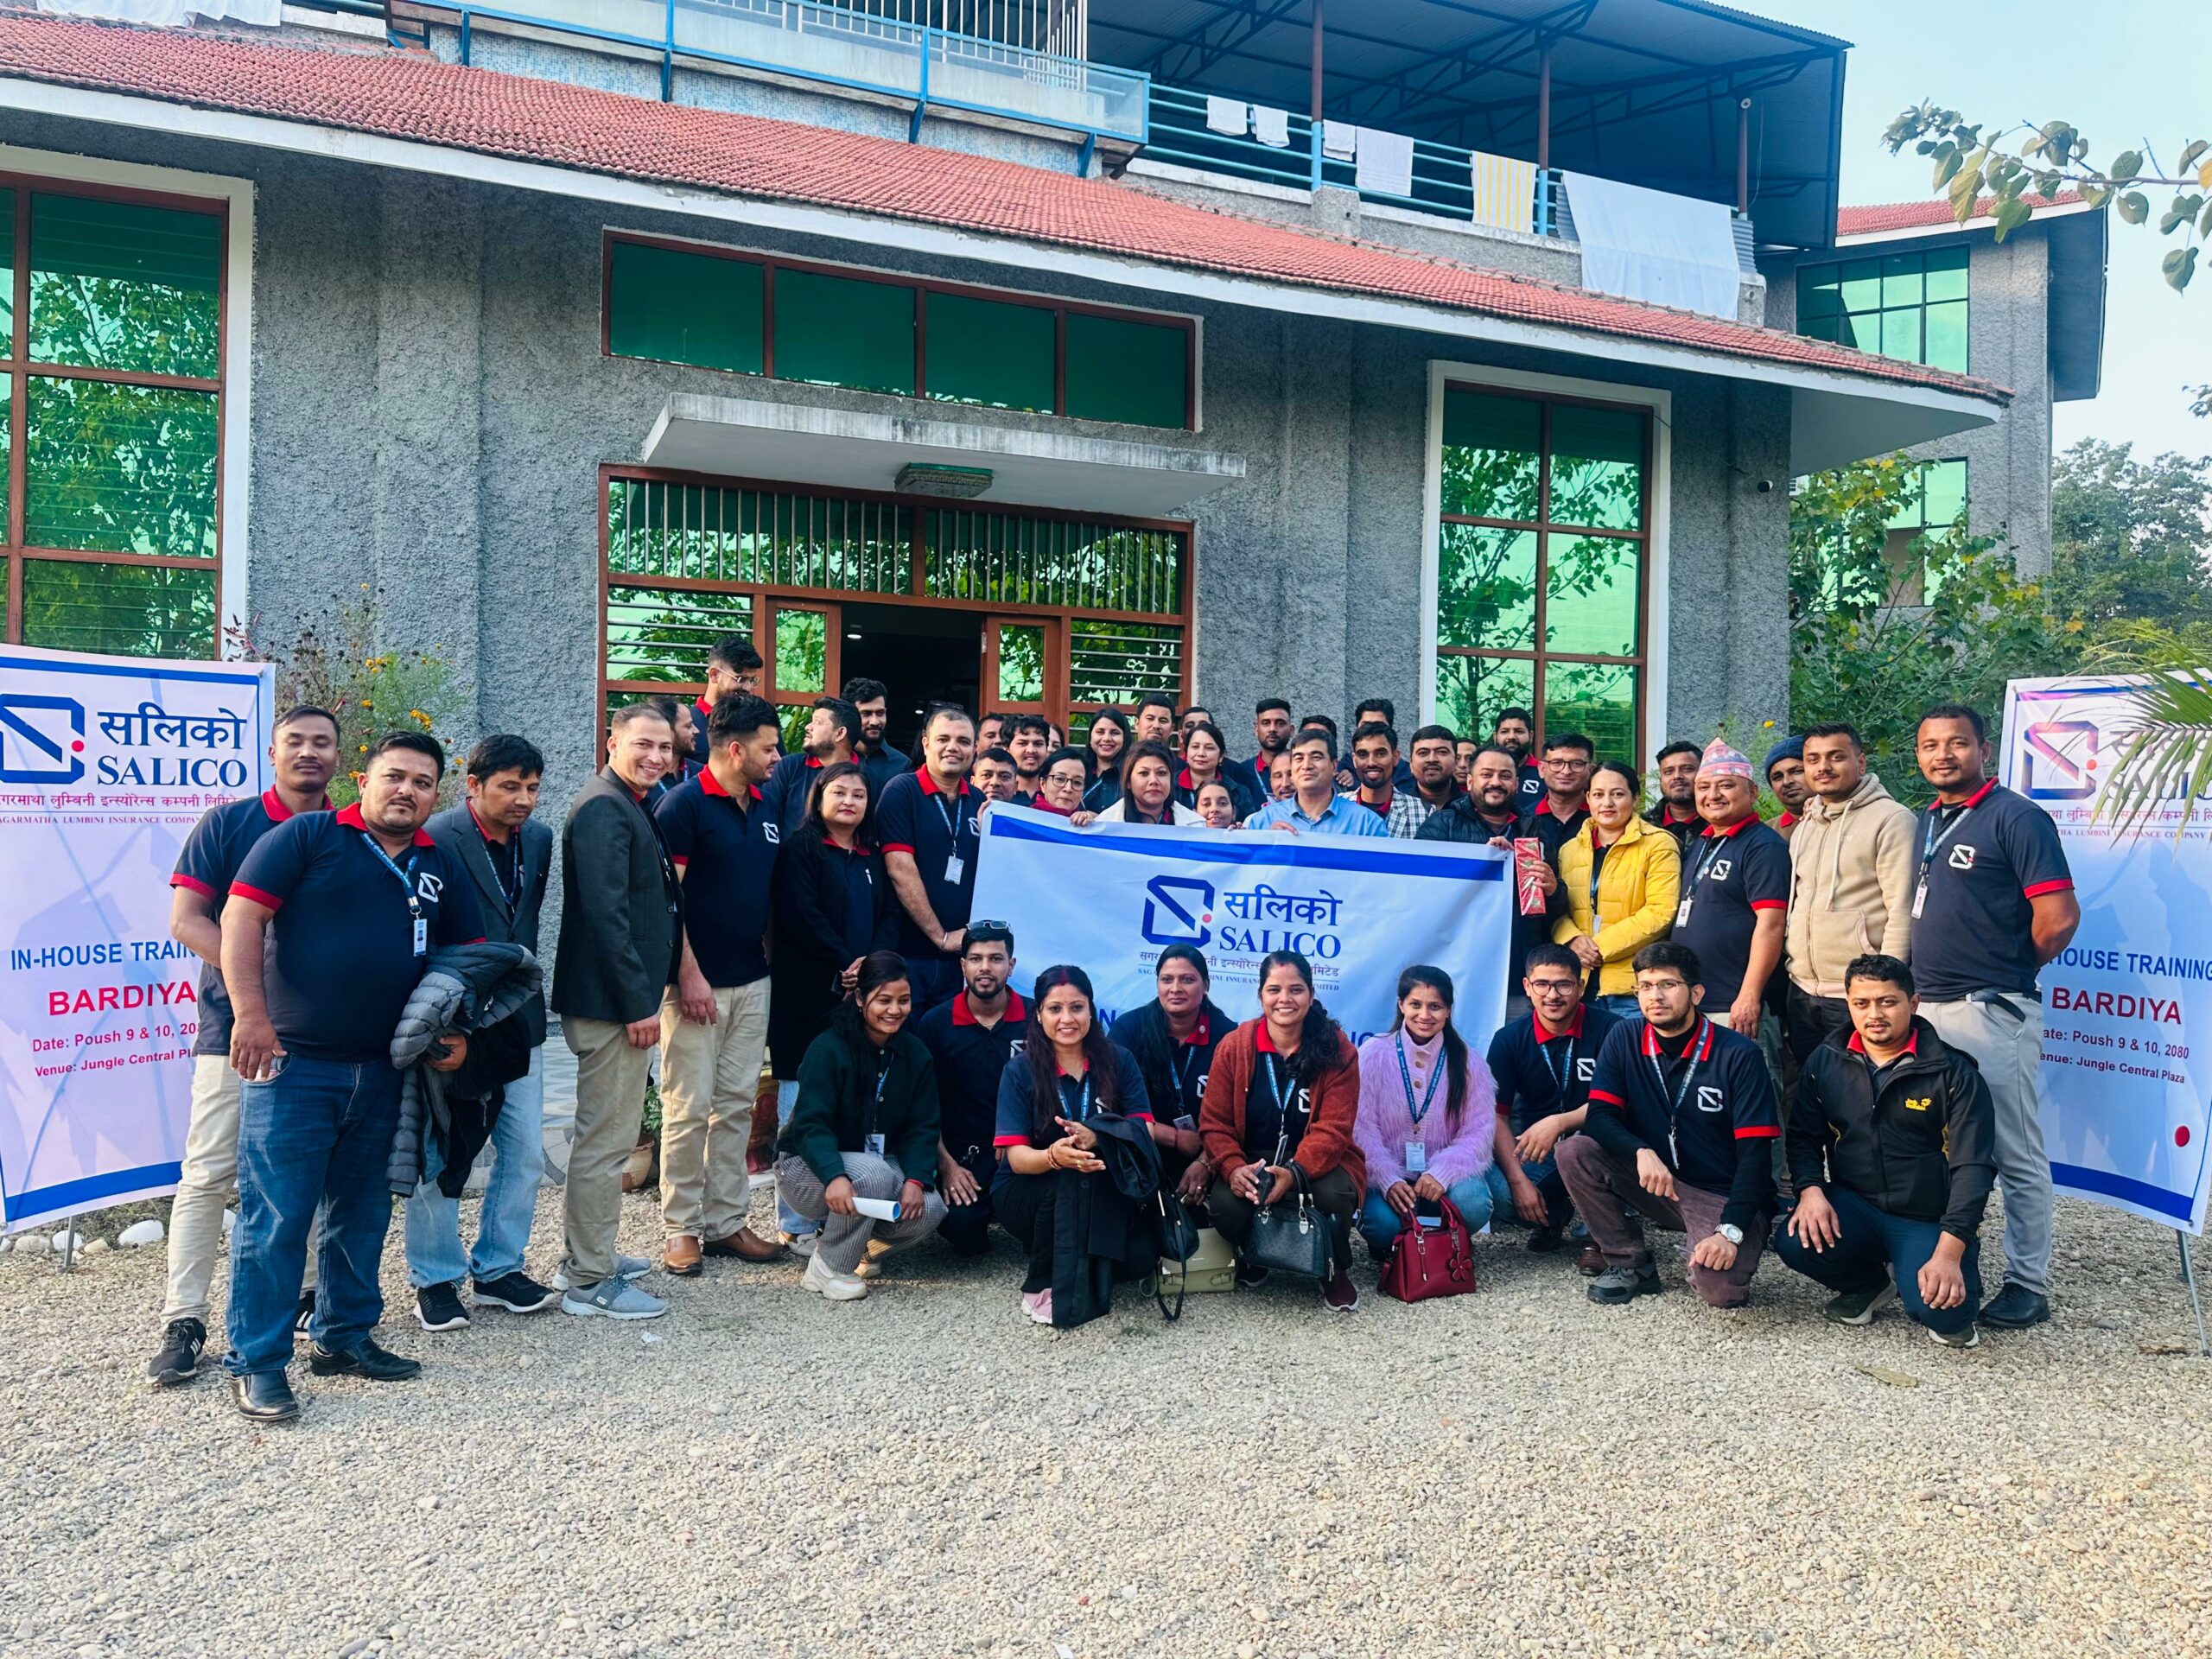 सगरमाथा लुम्बिनी इन्स्योरेन्सको प्रदेश स्तरिय पेशागत दक्षता अभिवृद्धि तालिम सम्पन्न